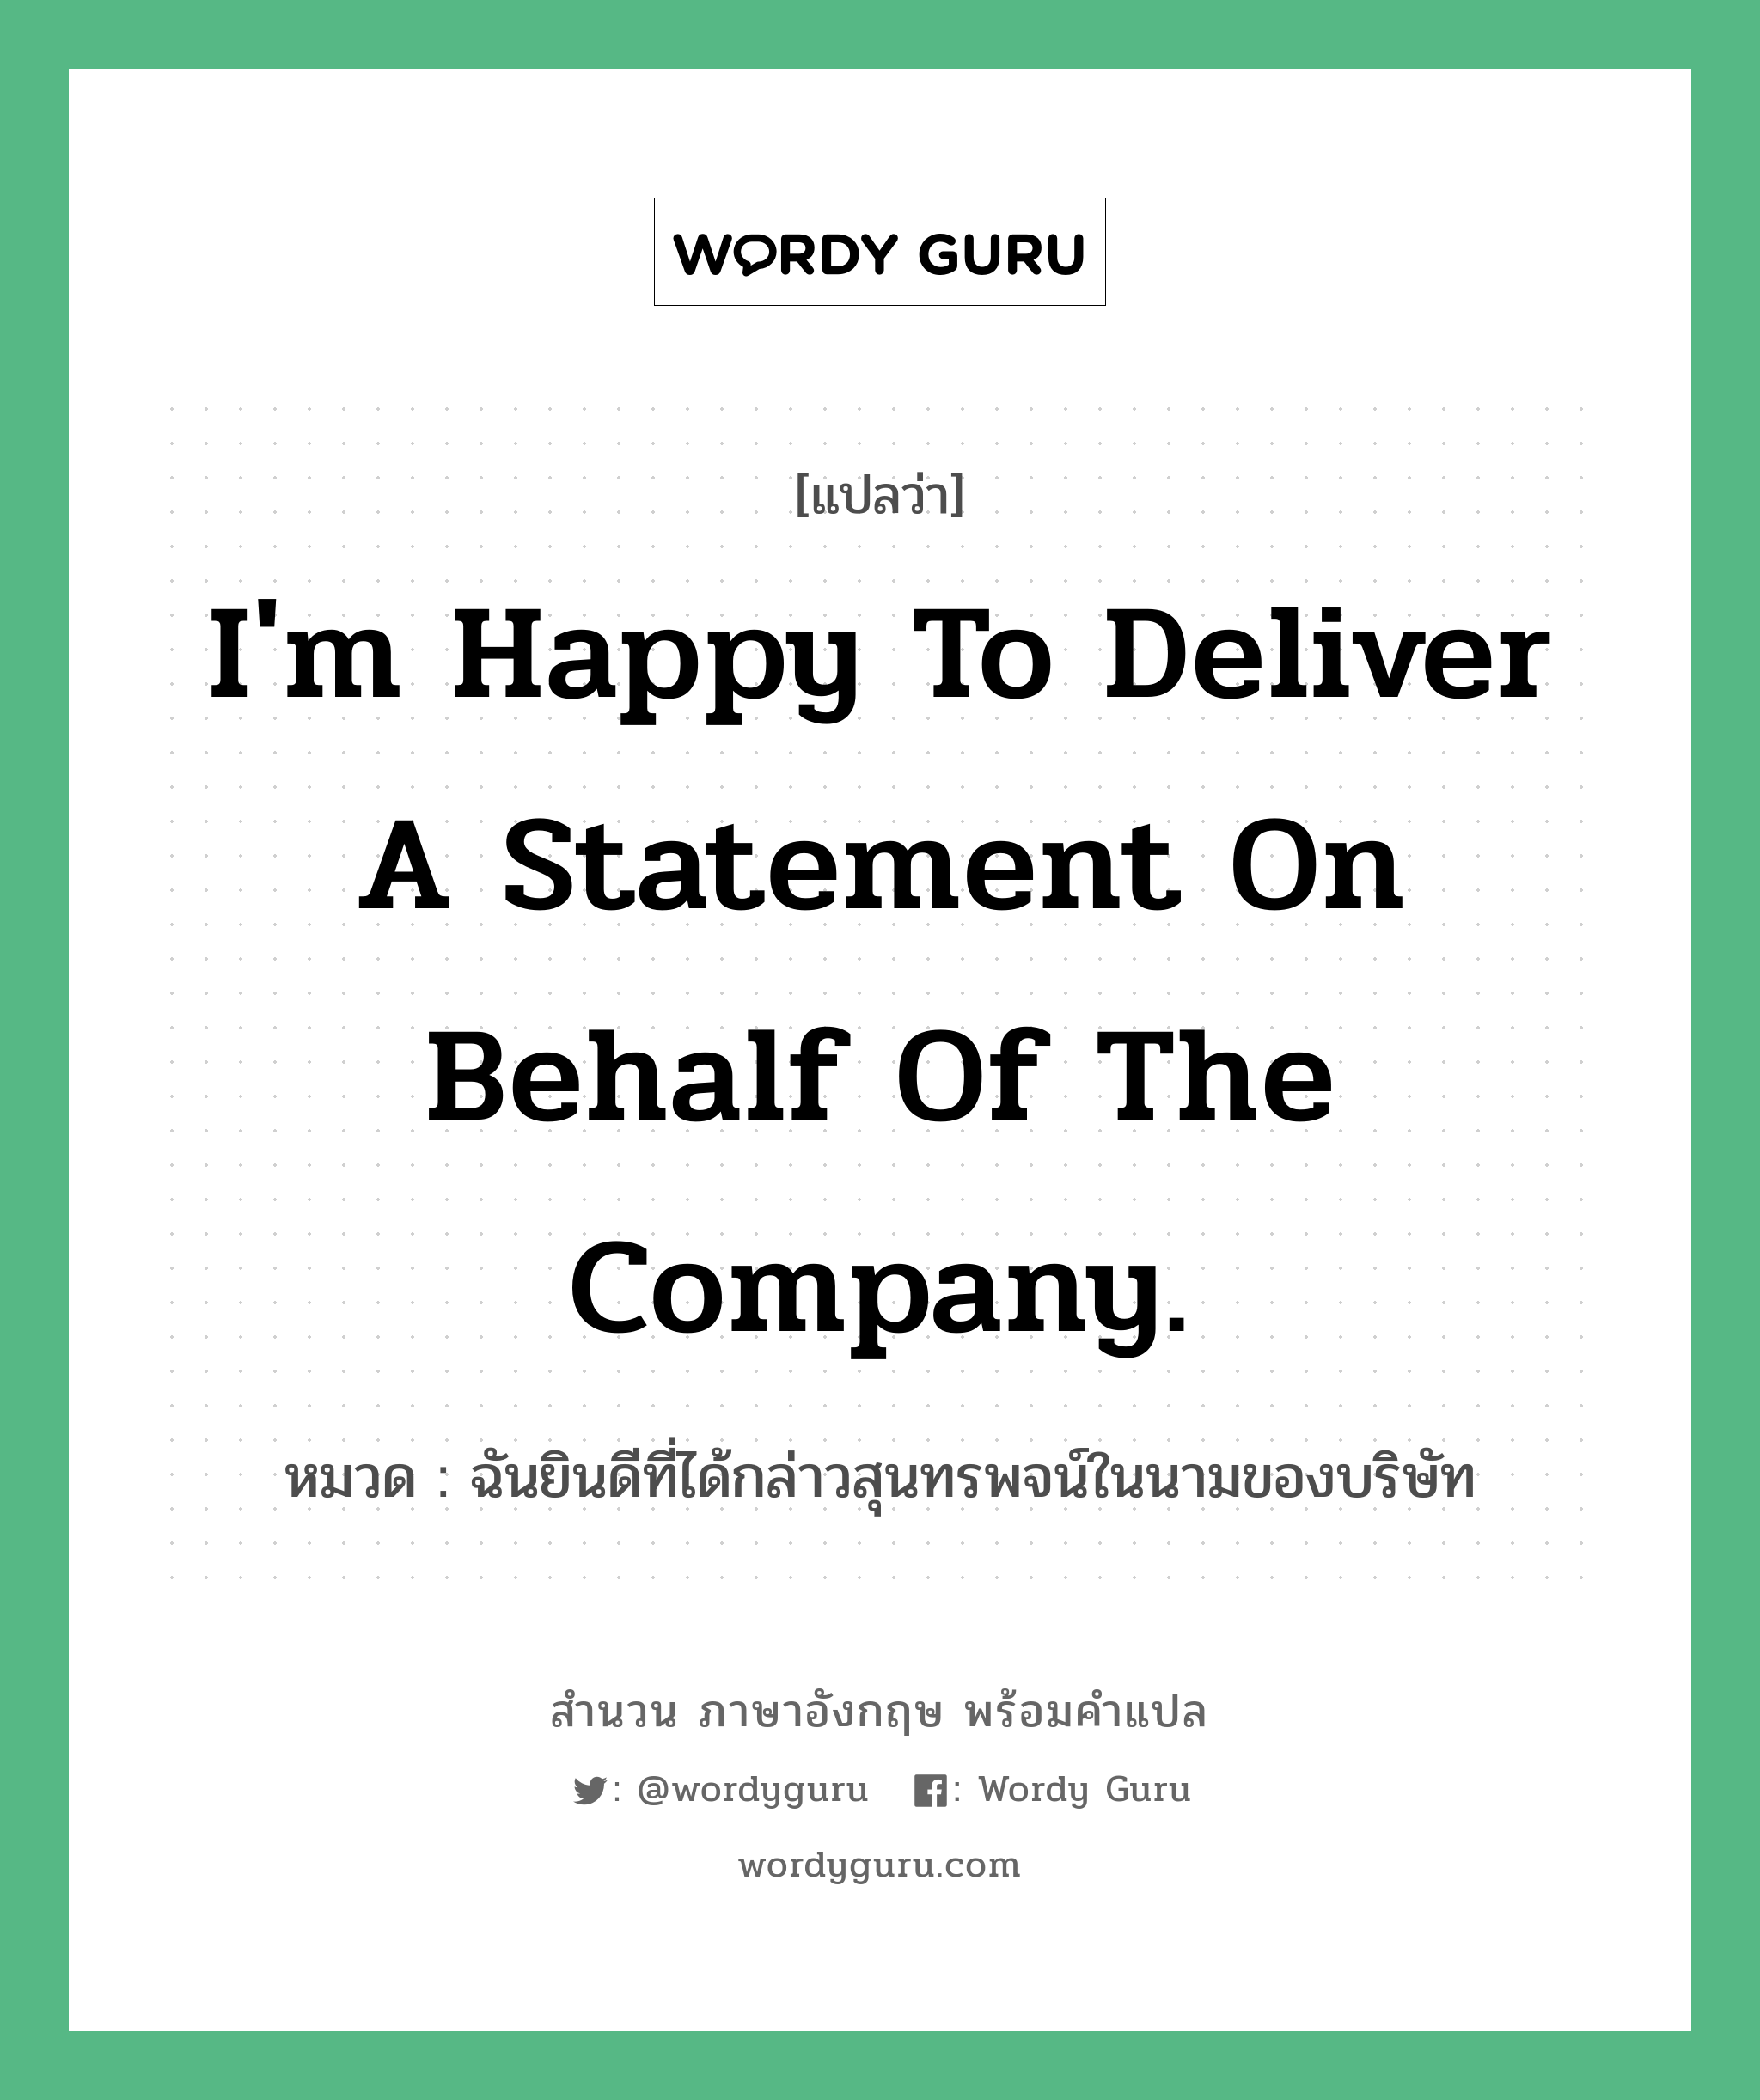 I'm happy to deliver a statement on behalf of the company. แปลว่า?, สำนวนภาษาอังกฤษ I'm happy to deliver a statement on behalf of the company. หมวด ฉันยินดีที่ได้กล่าวสุนทรพจน์ในนามของบริษัท